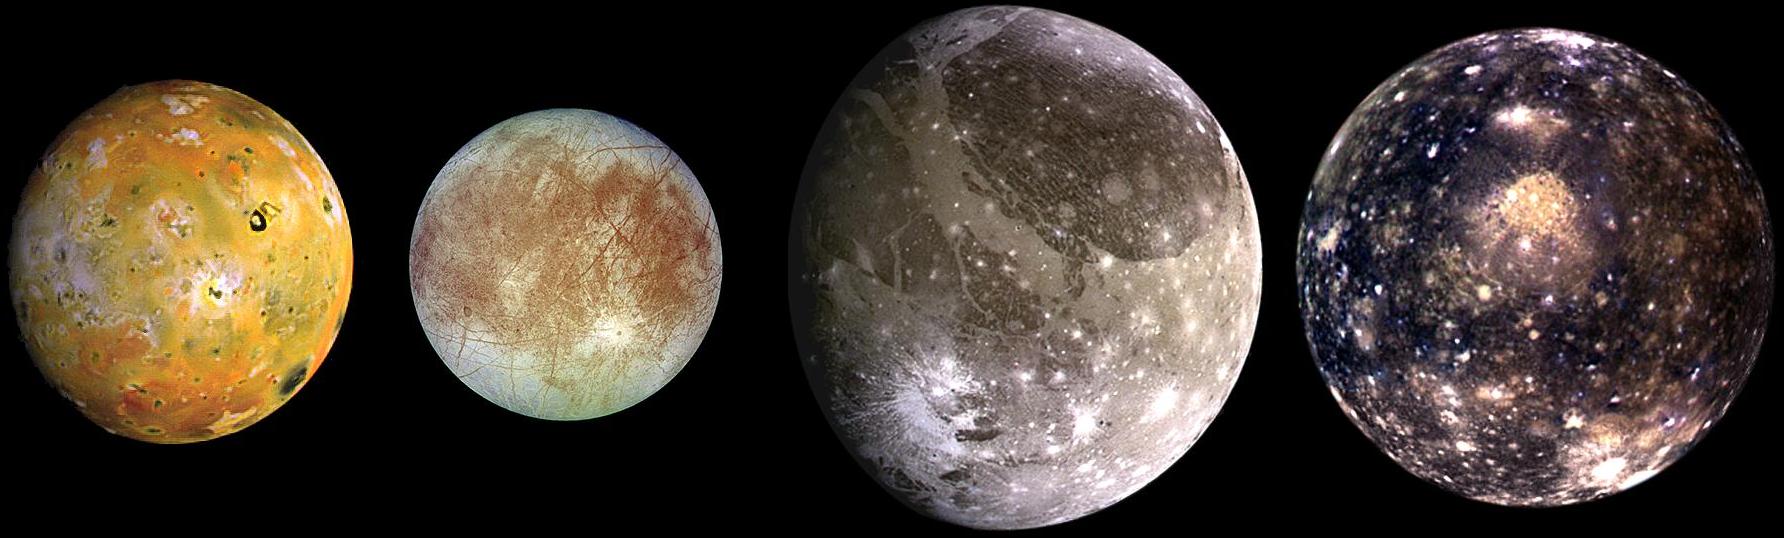 Les quatre lunes médicéennes de Jupiter photographiées par Galileo. De gauche à droite, en partant de Jupiter : Io, Europe, Callisto, Ganymède.&nbsp; © Nasa